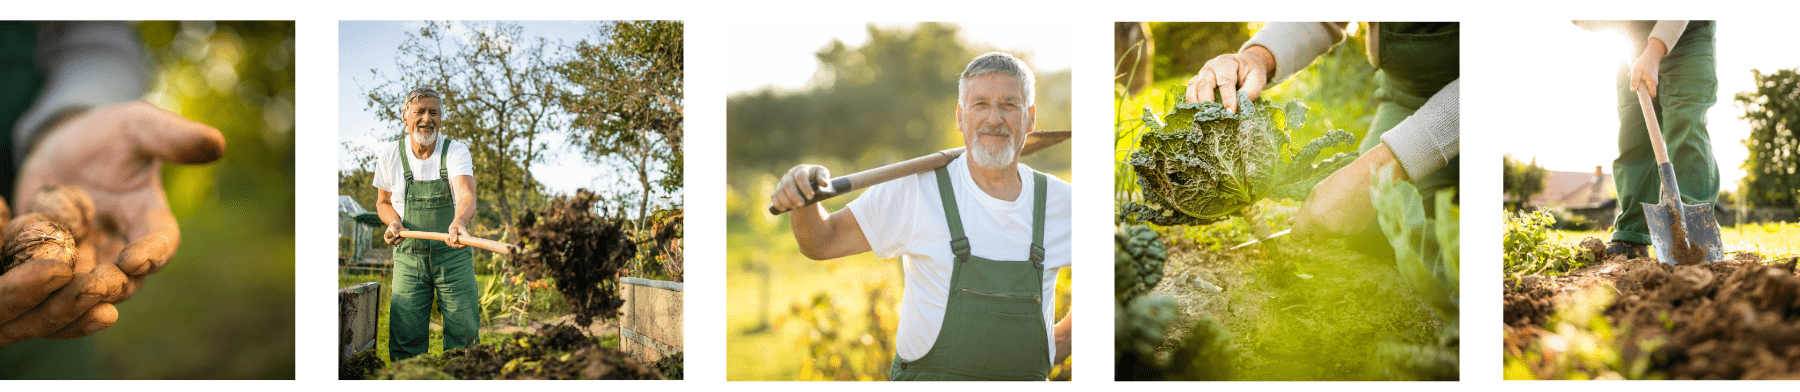 גבר עם כלי גינון עוסק בגינון בגינה, כלי גינון, שתילה וטיפול בגינה, גידול ירקות